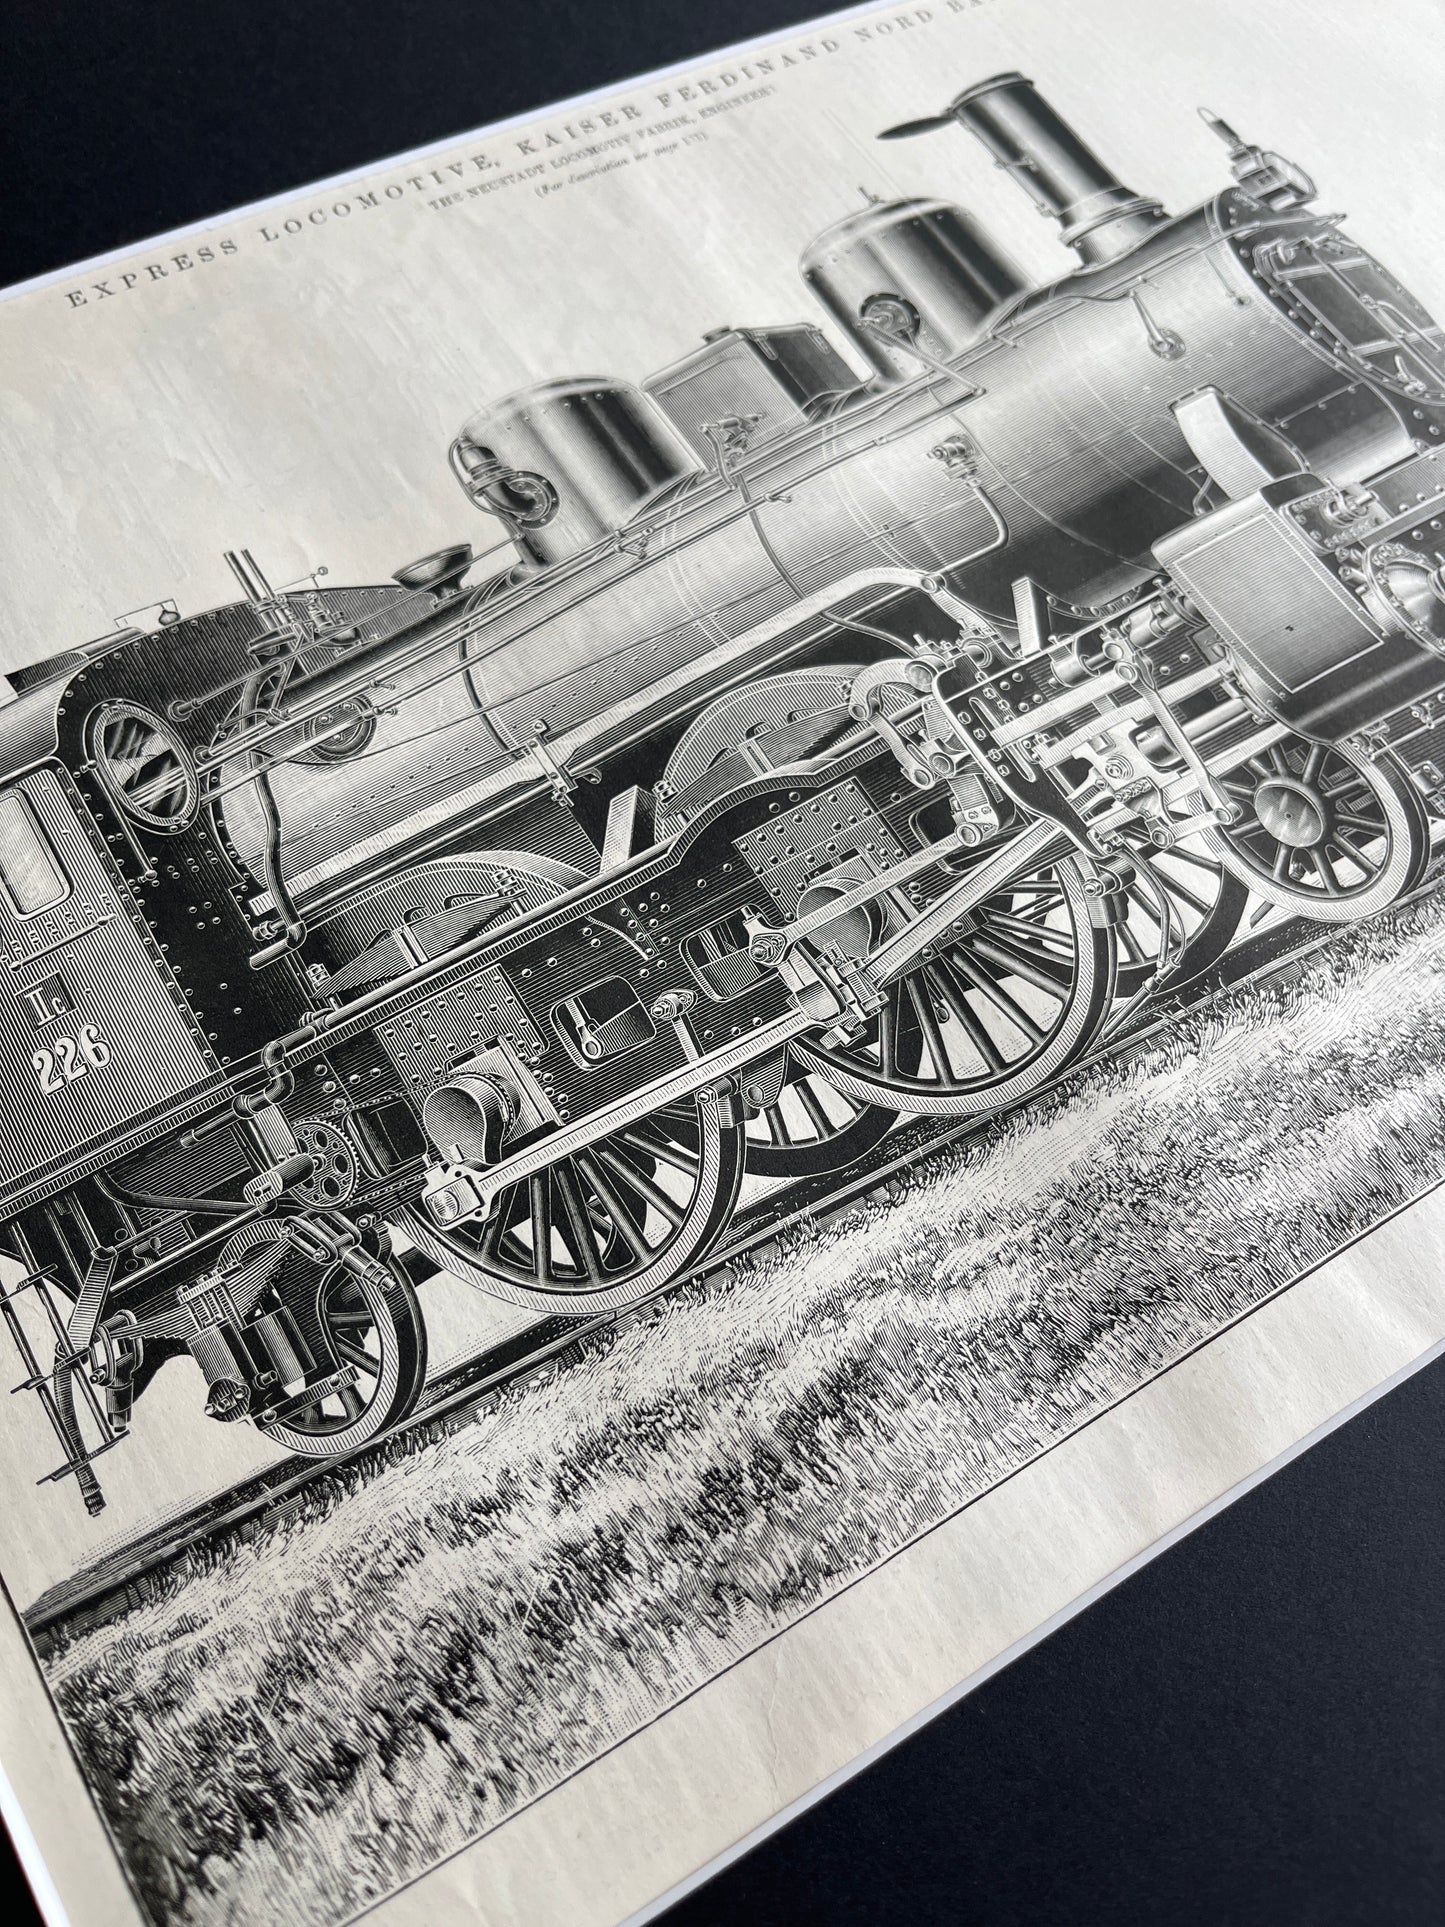 Express locomotive prent uit The Engineer uit 1897